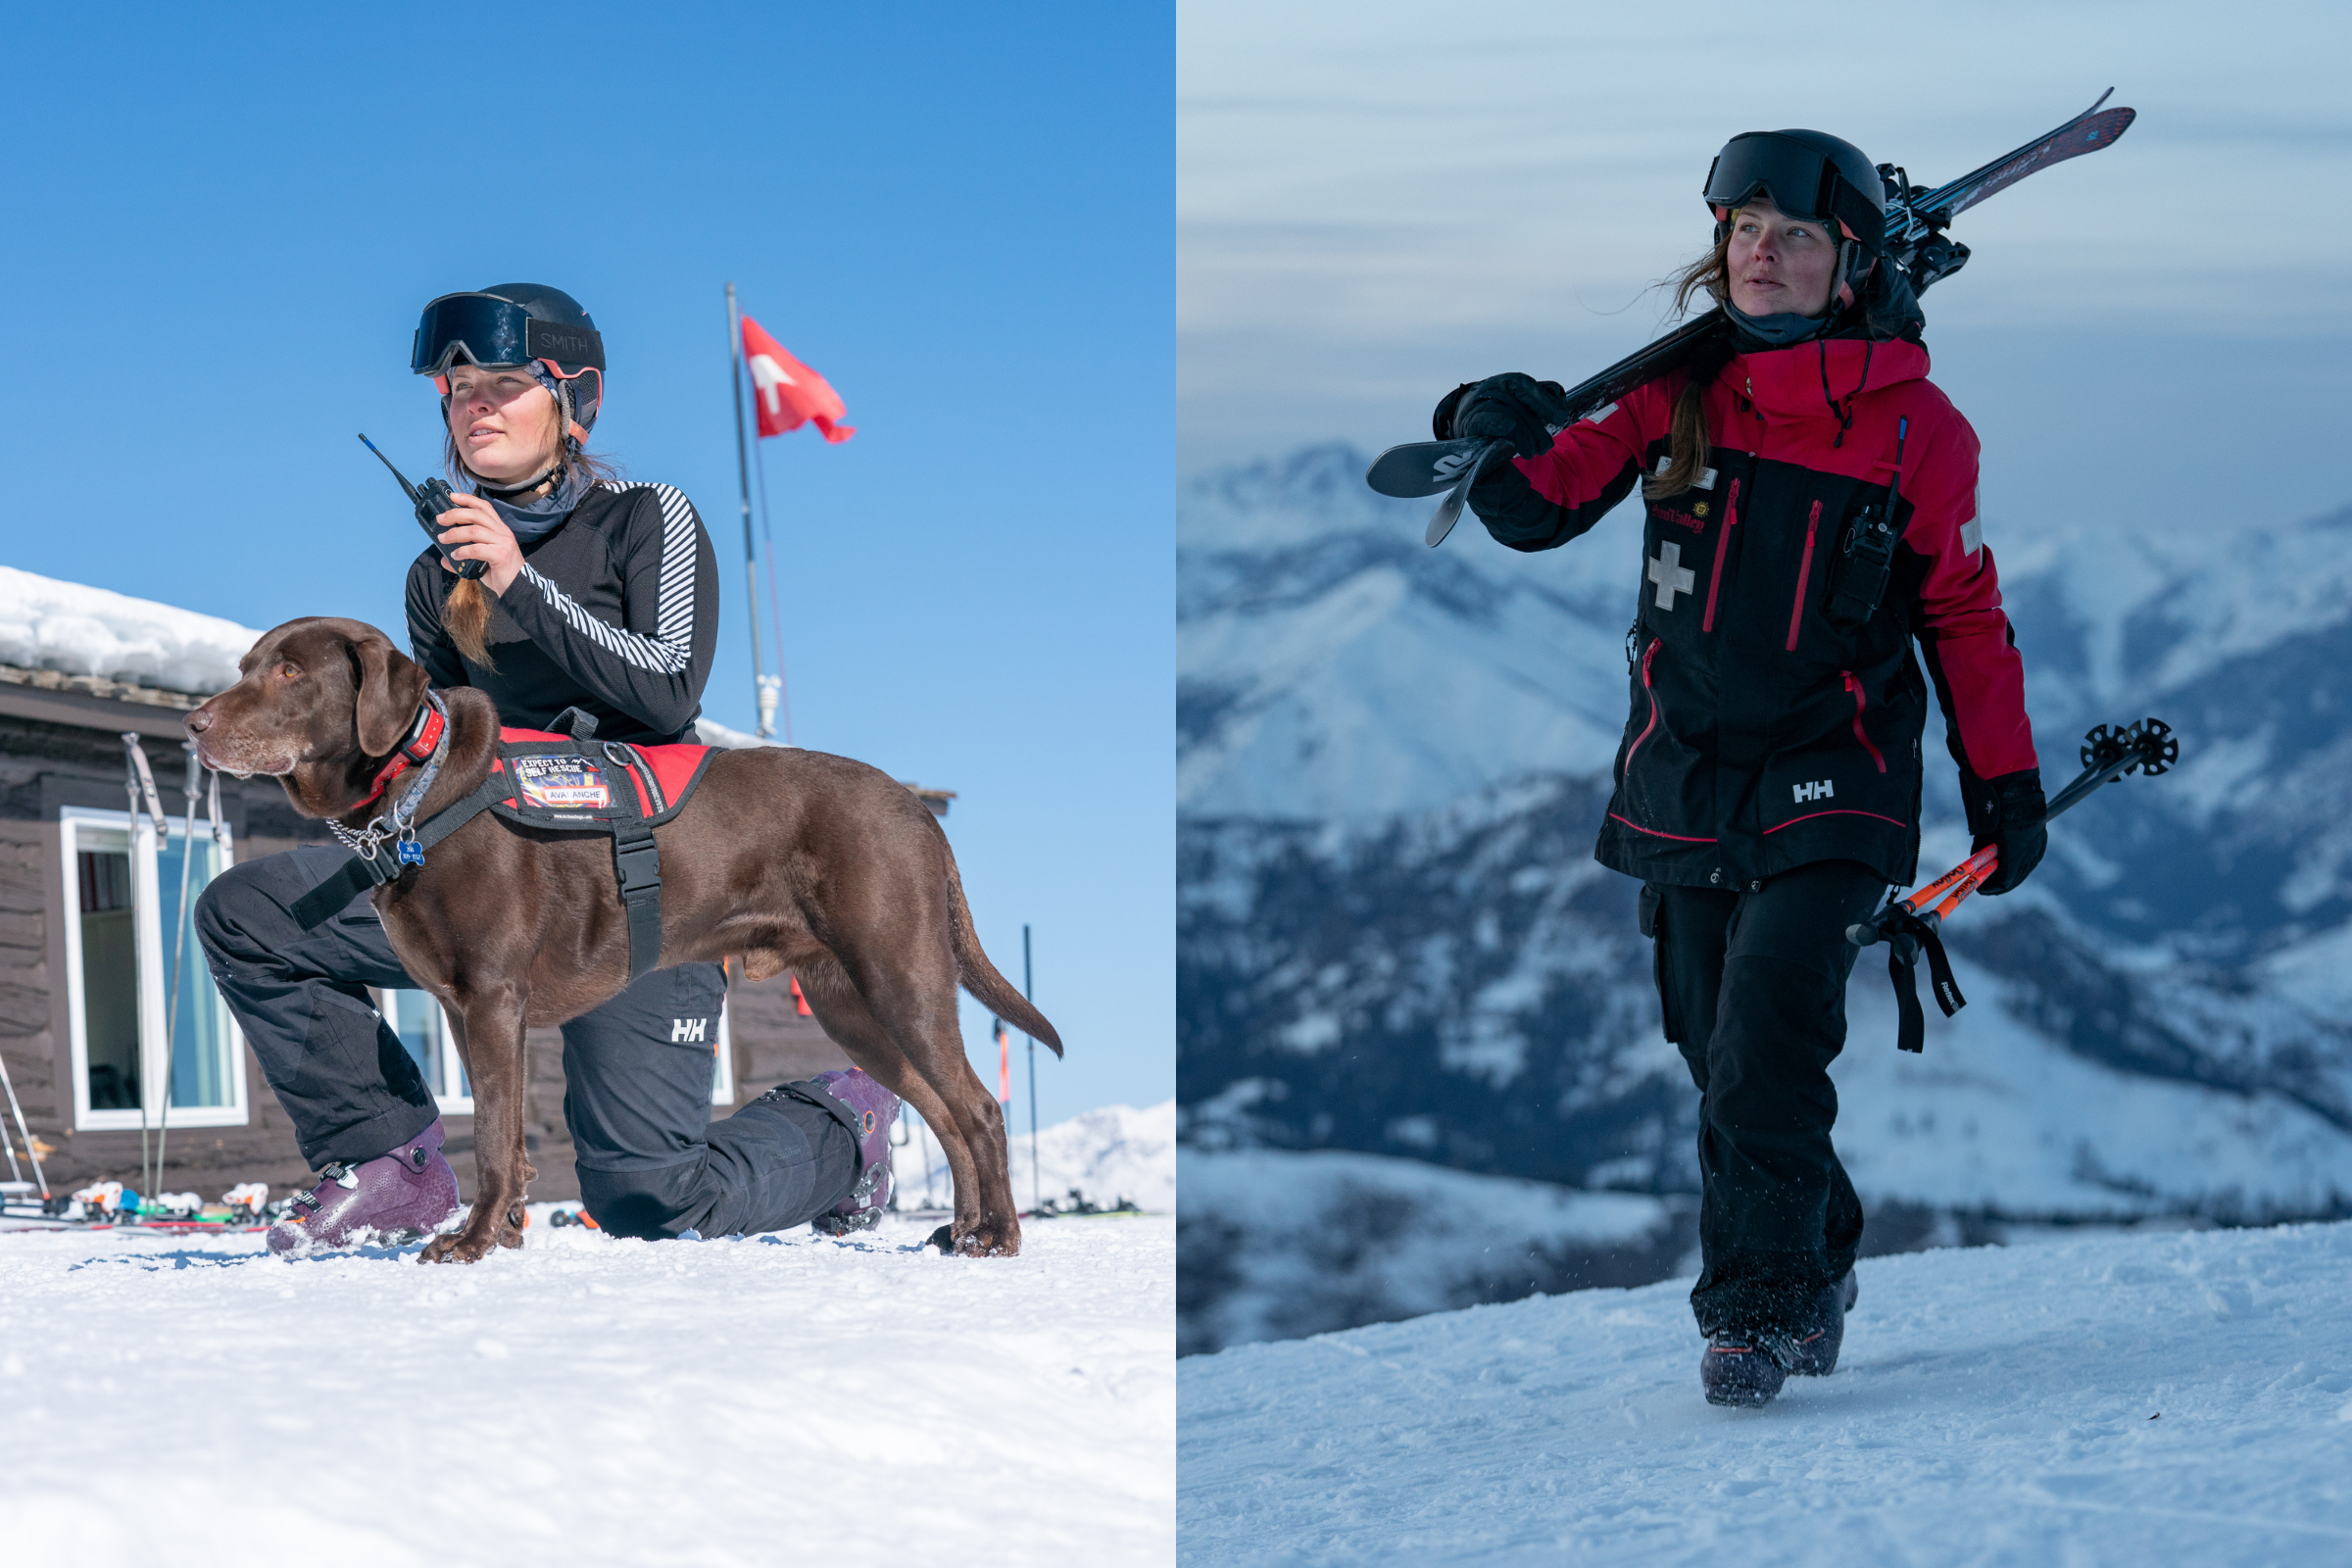 Helly Hansen supports International Ski Patrol Day